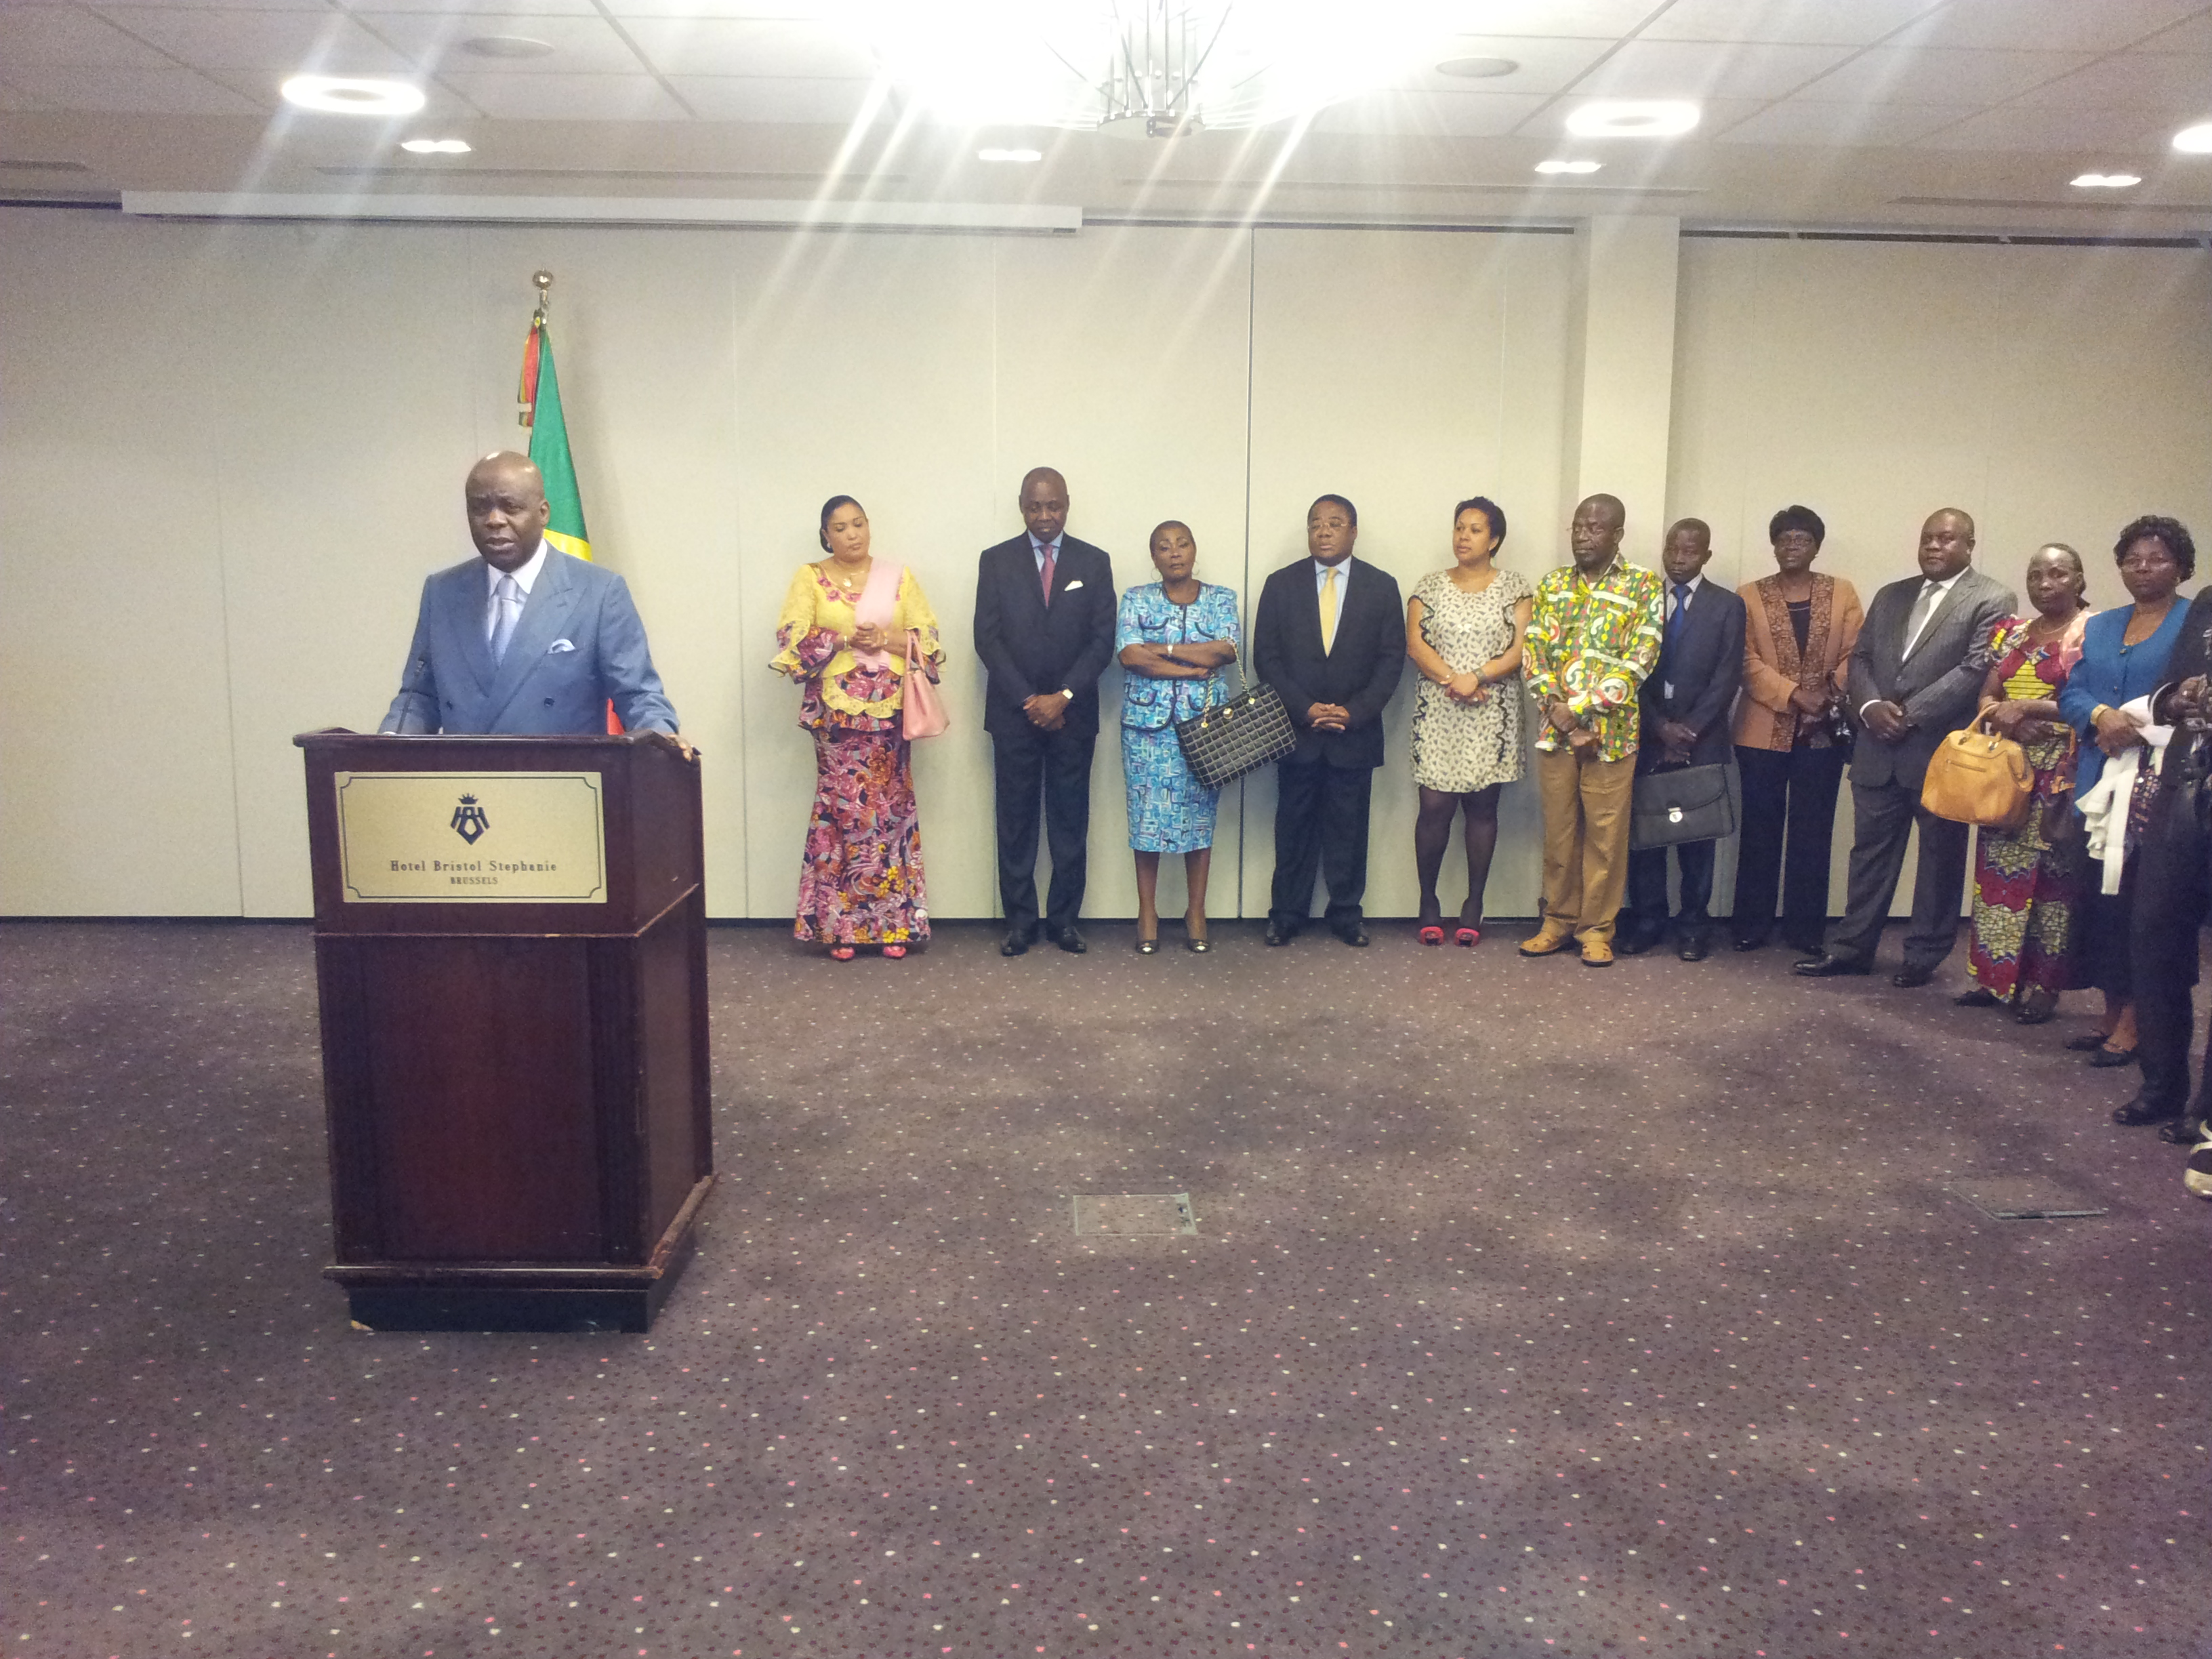 L'ambassadeur Roger Julien Menga entouré du personnel de l'ambassade du Congo auprès du Benelux